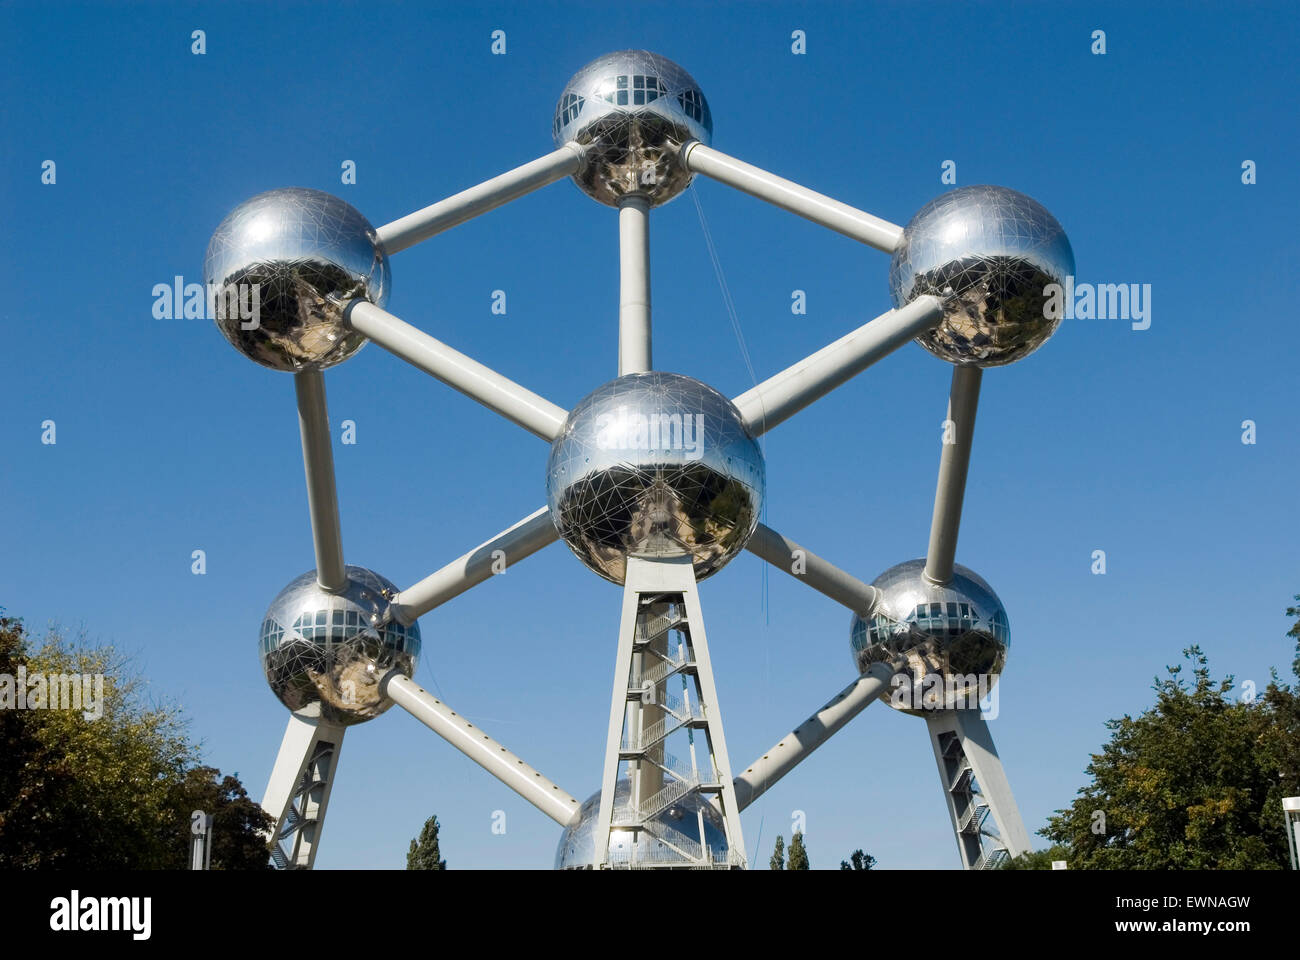 Atomium, monumento famosos mundialmente de un núcleo atómico de hierro, en 2018 60 aniversario de Europa, Bruselas, Bélgica Foto de stock